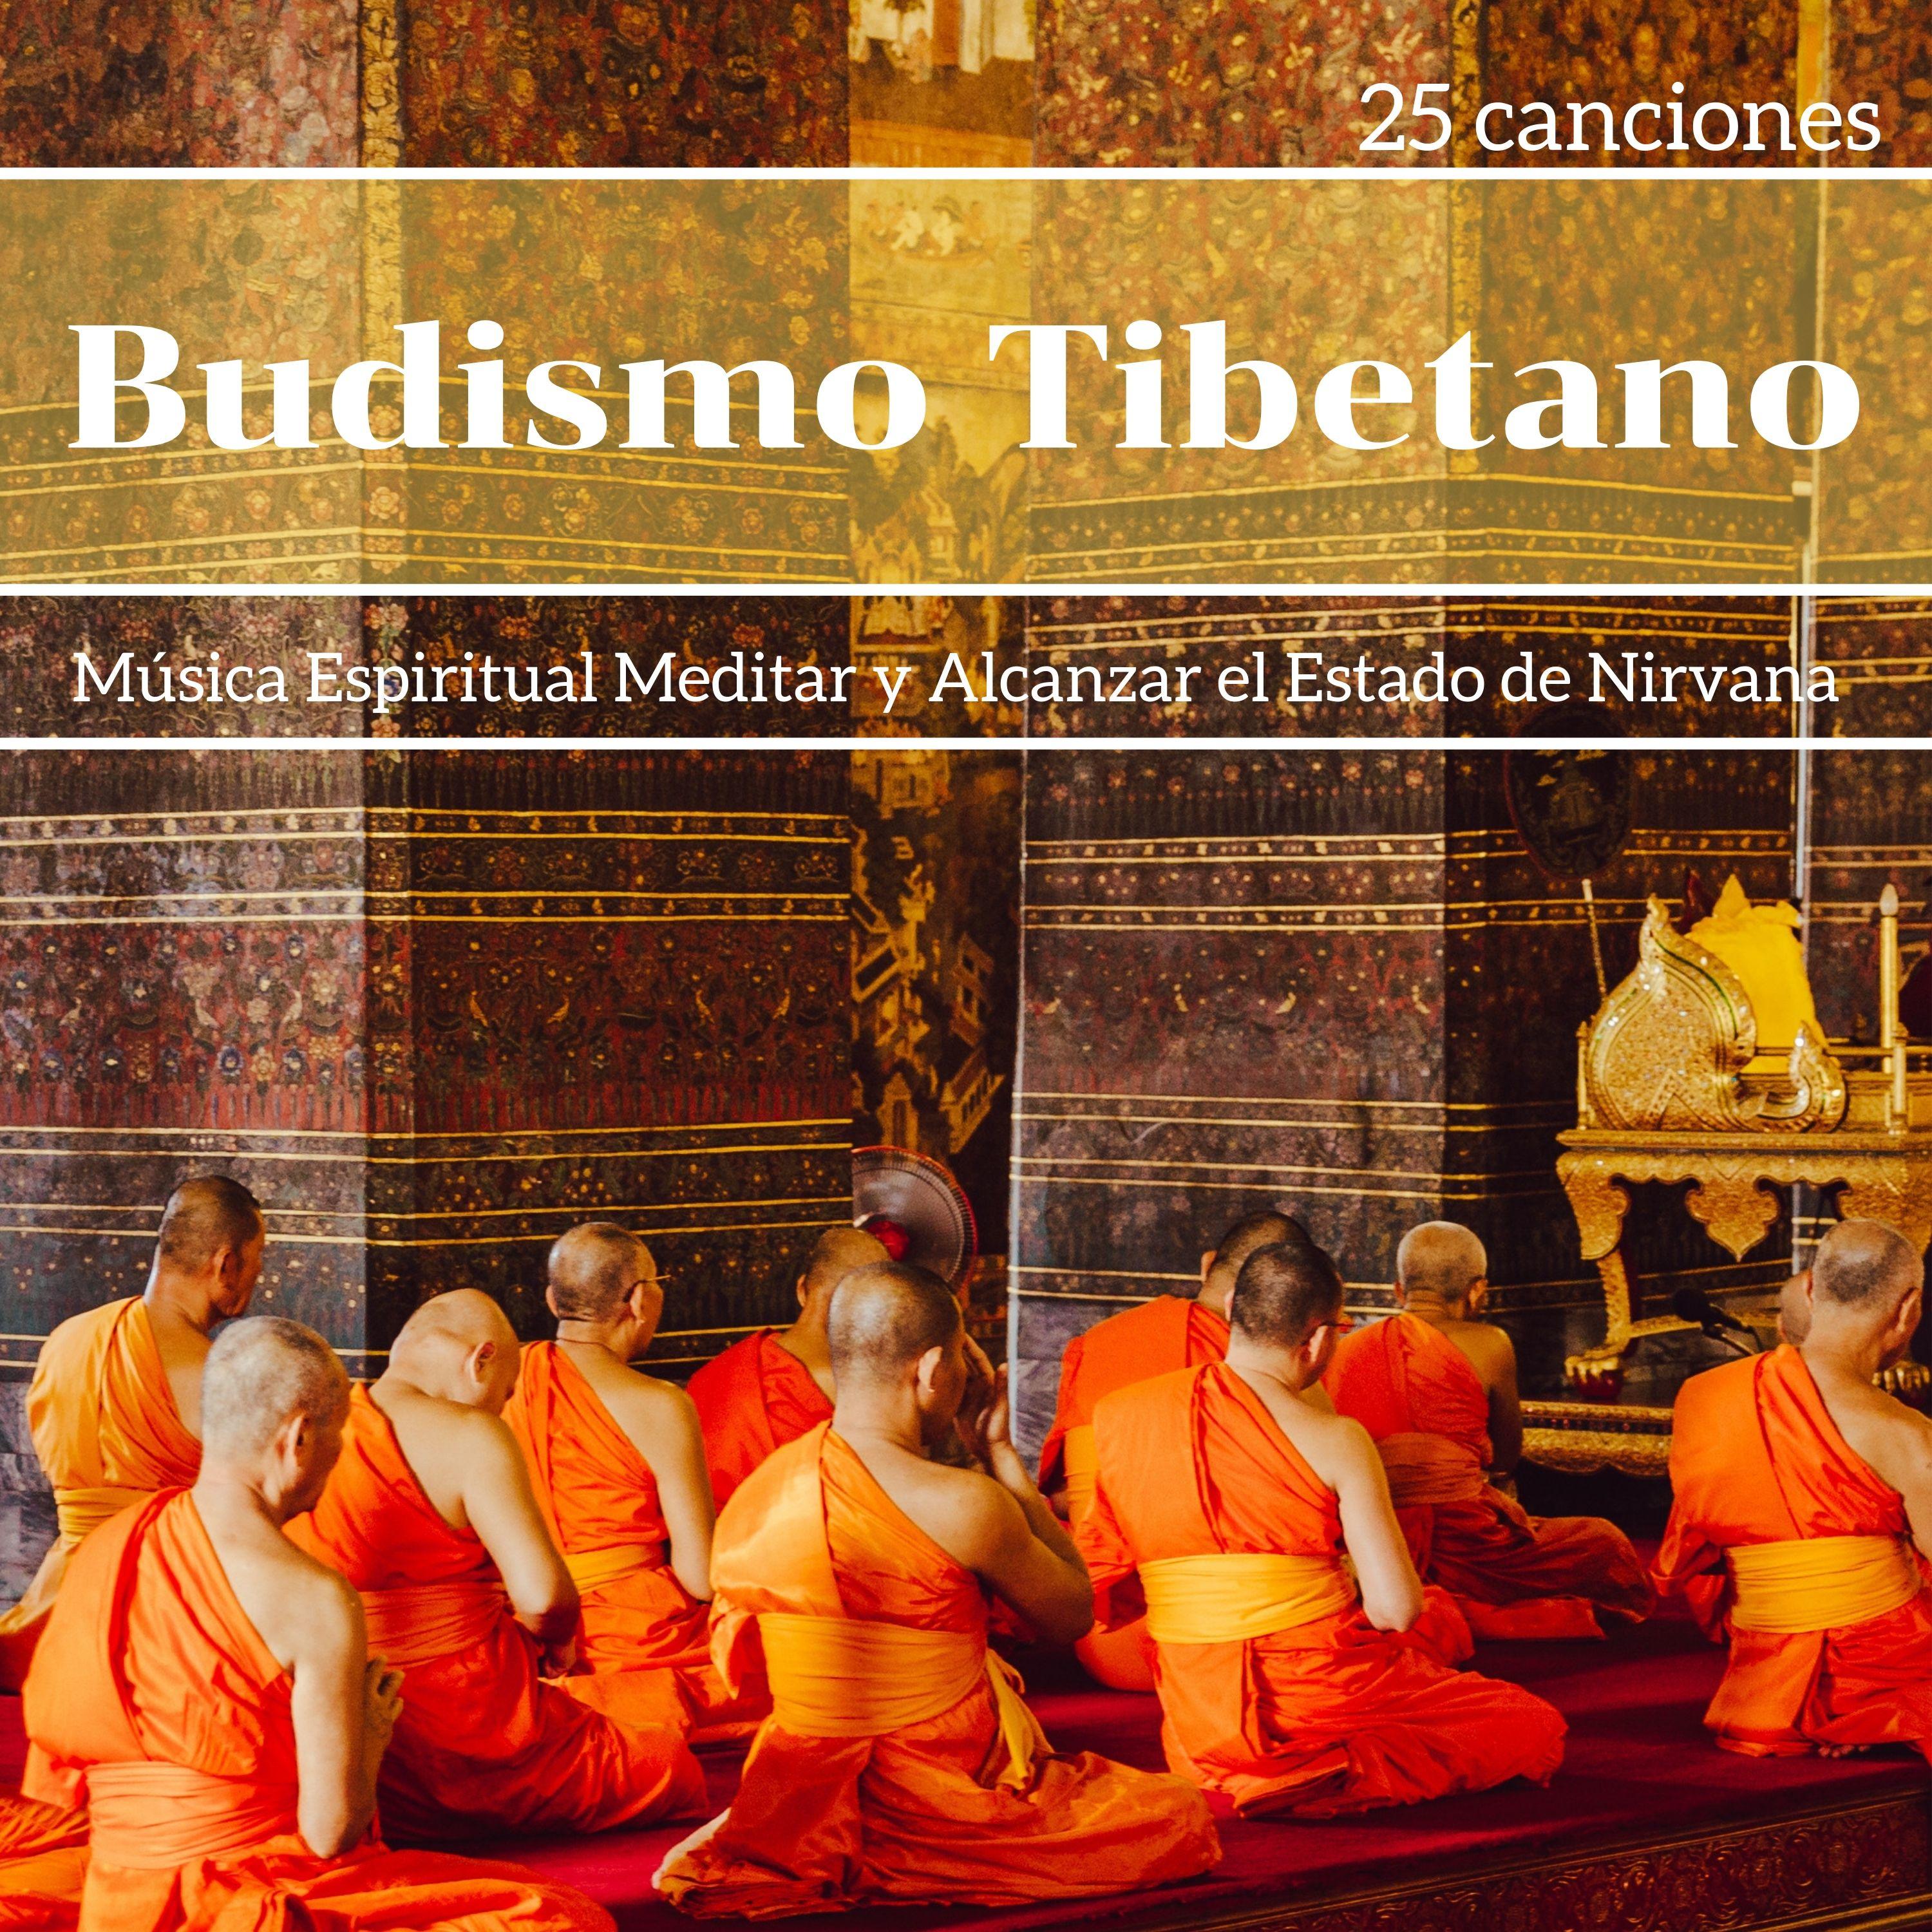 Budismo Tibetano 25 Canciones  Mu sica Espiritual Meditar y Alcanzar el Estado de Nirvana